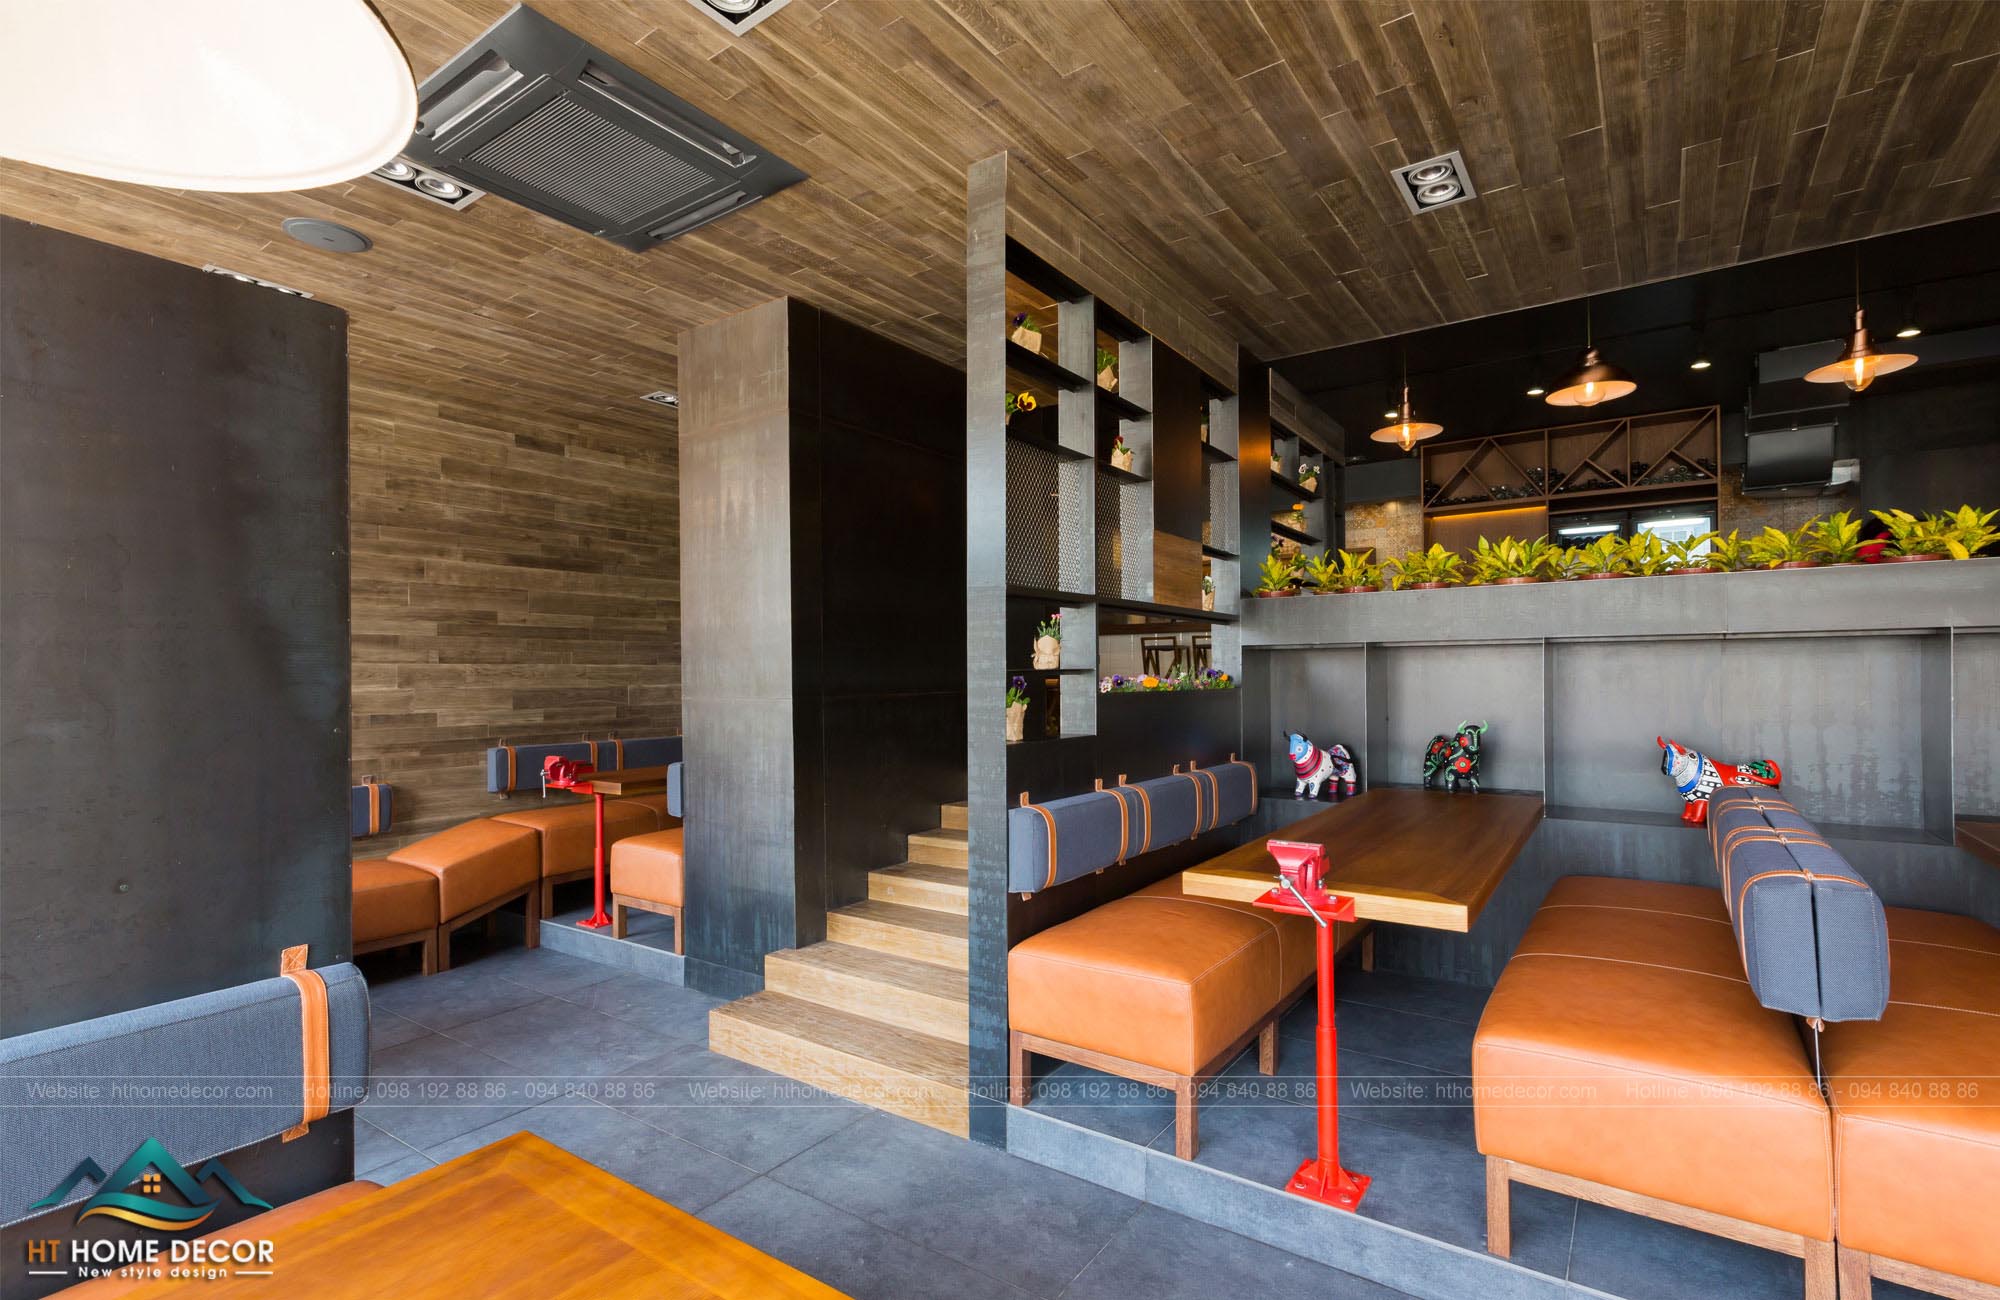 Ưu tiên thiết kế quán rượu nhỏ có tầng trên, tạo nên không gian rộng hơn cho không gian quán của bạn! Đồng thời cũng tạo được không gian cho những quý khách hàng ưa môi trường thoáng đãng.